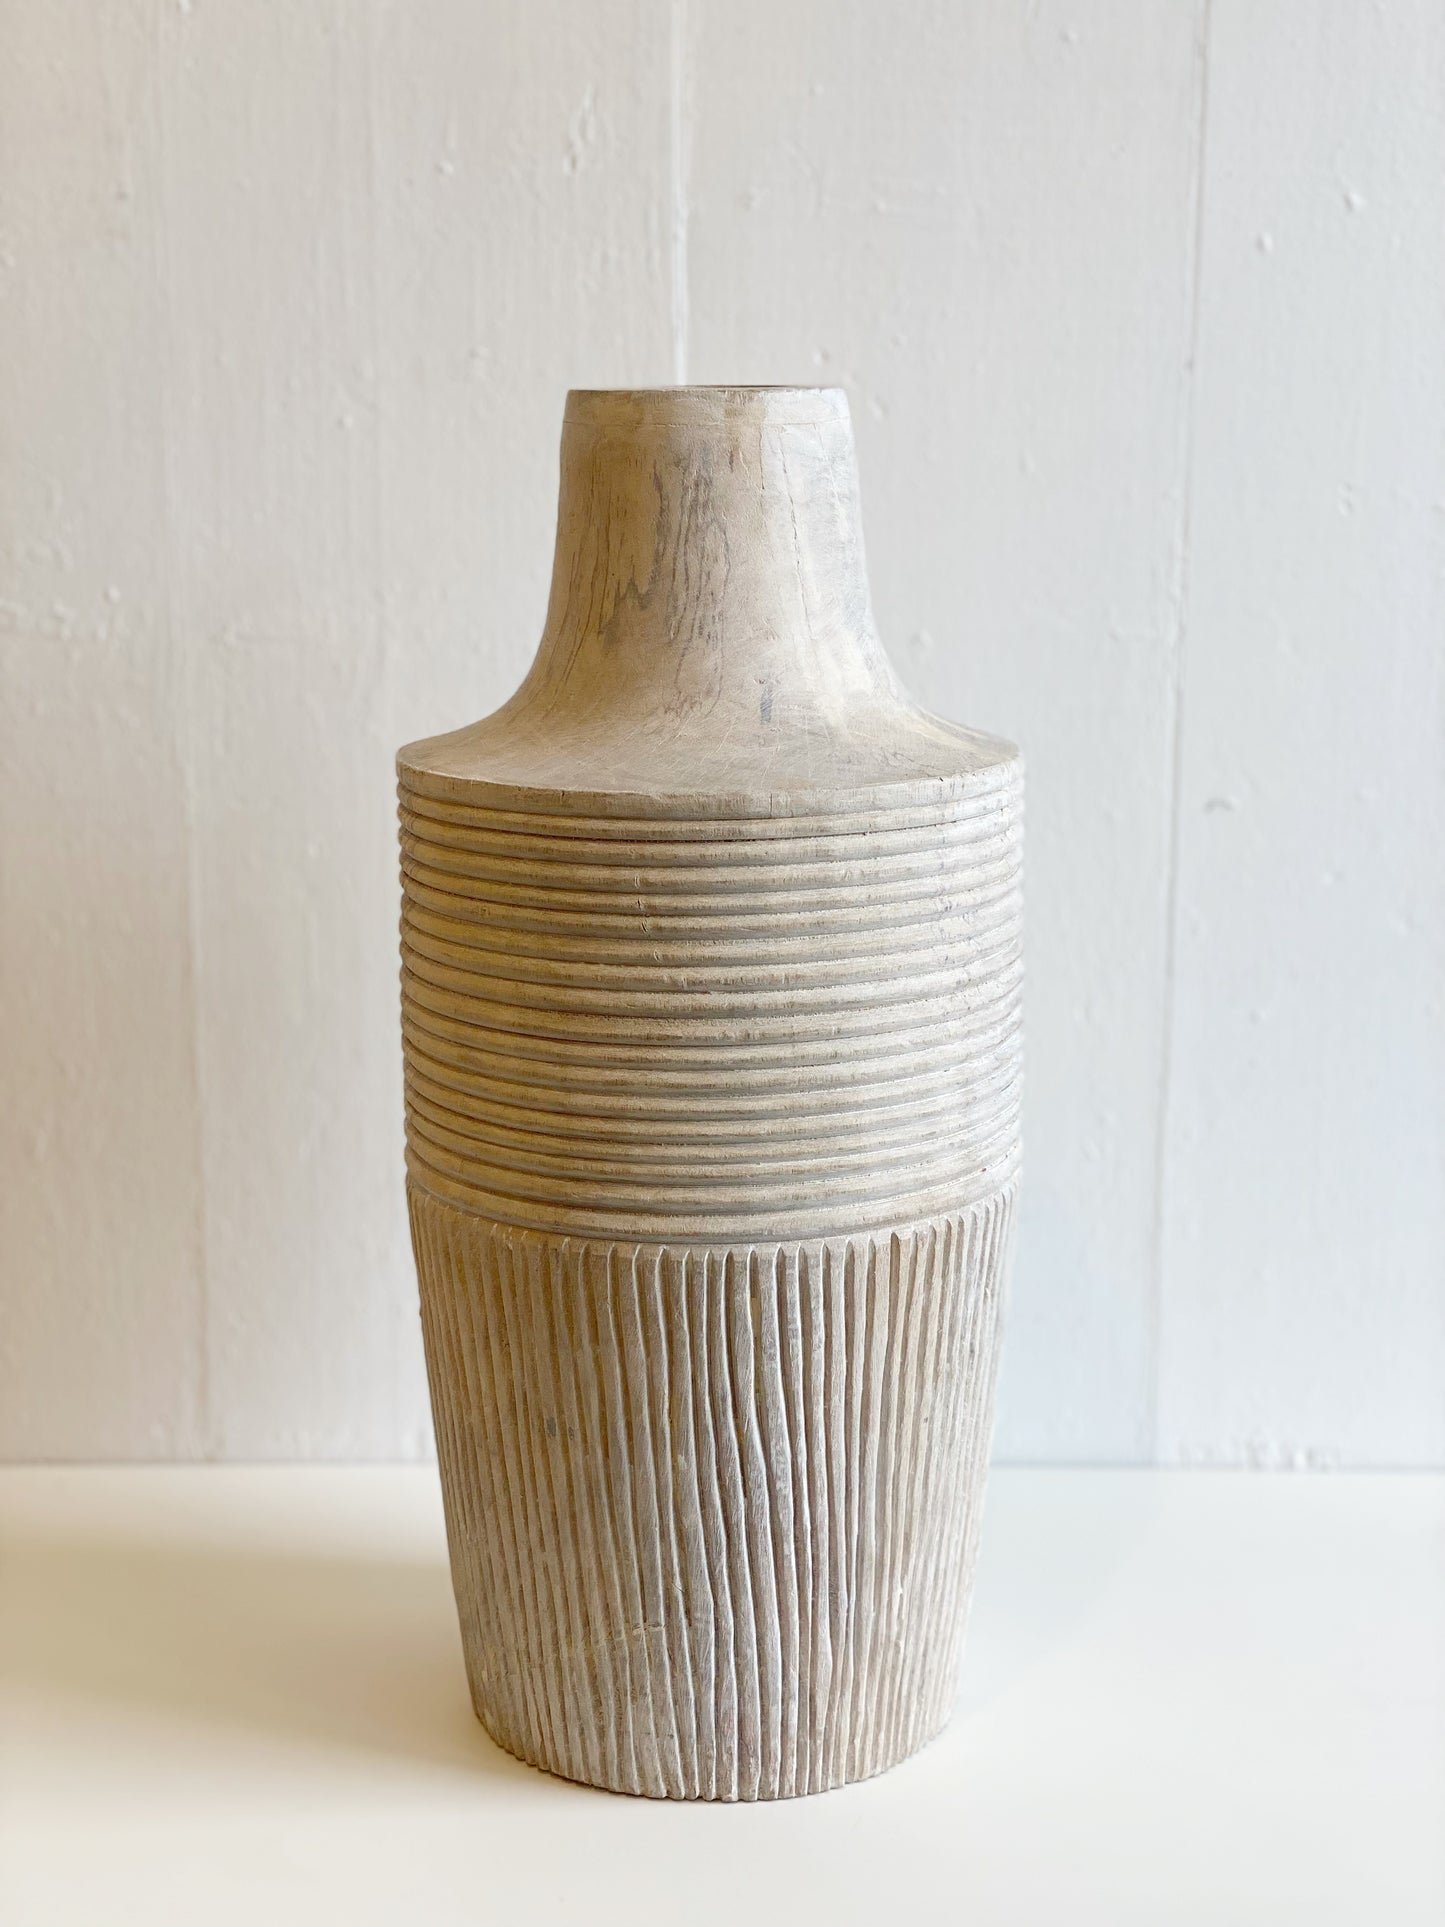 Decorative Hand-Carved Mango Wood Vase